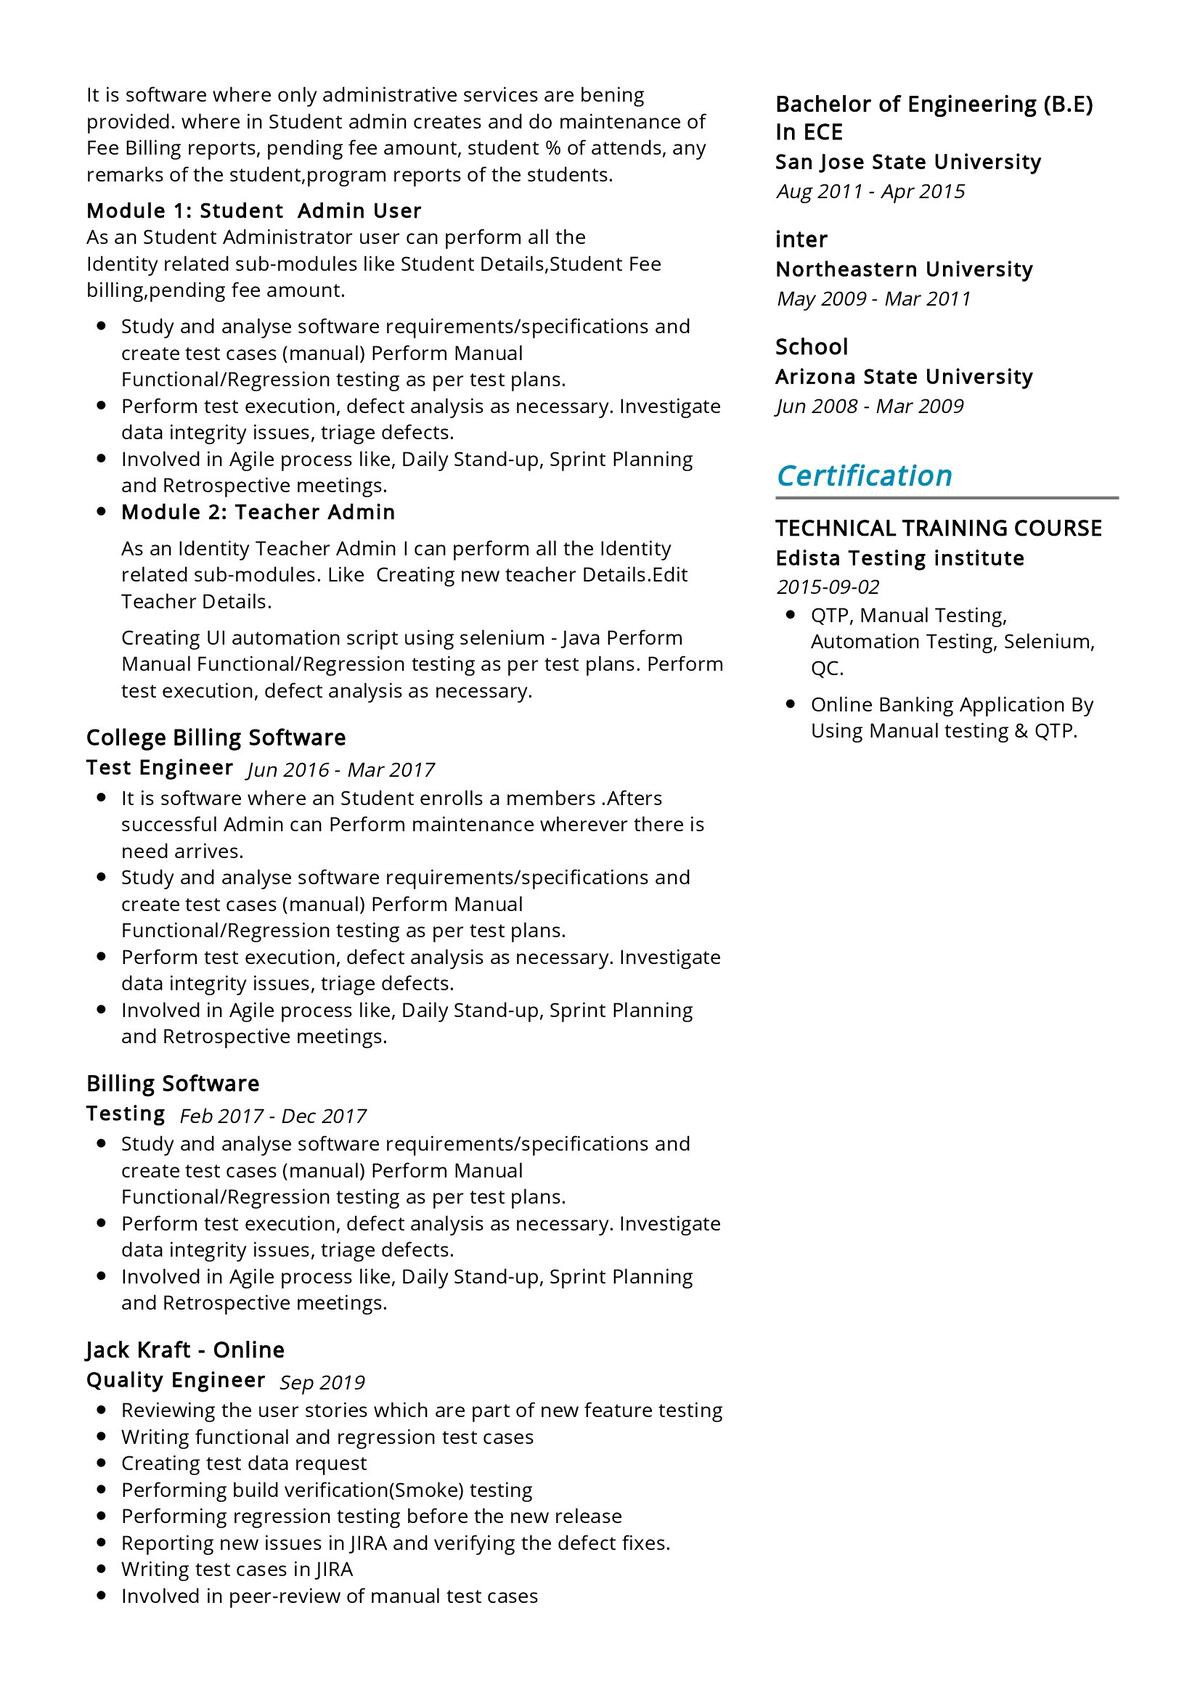 Selenium Testing Resume Sample for Freshers software Testing Resume Sample 2021 Writing Guide & Tips …